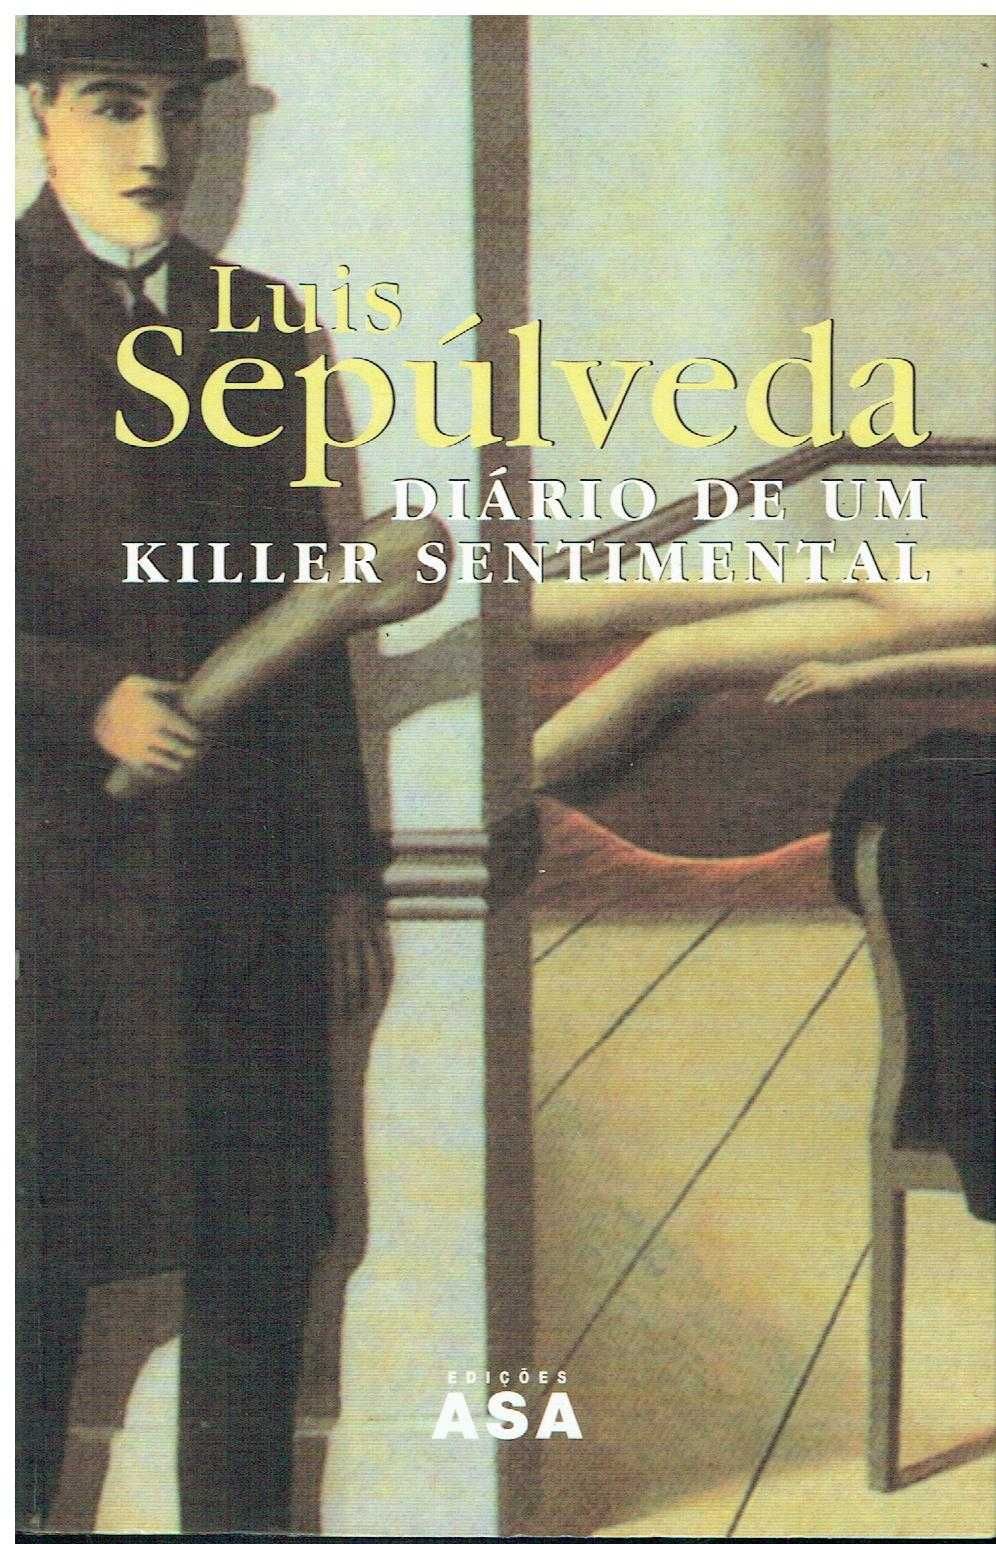 5444 - Livros de Luis Sepúlveda (Vários)